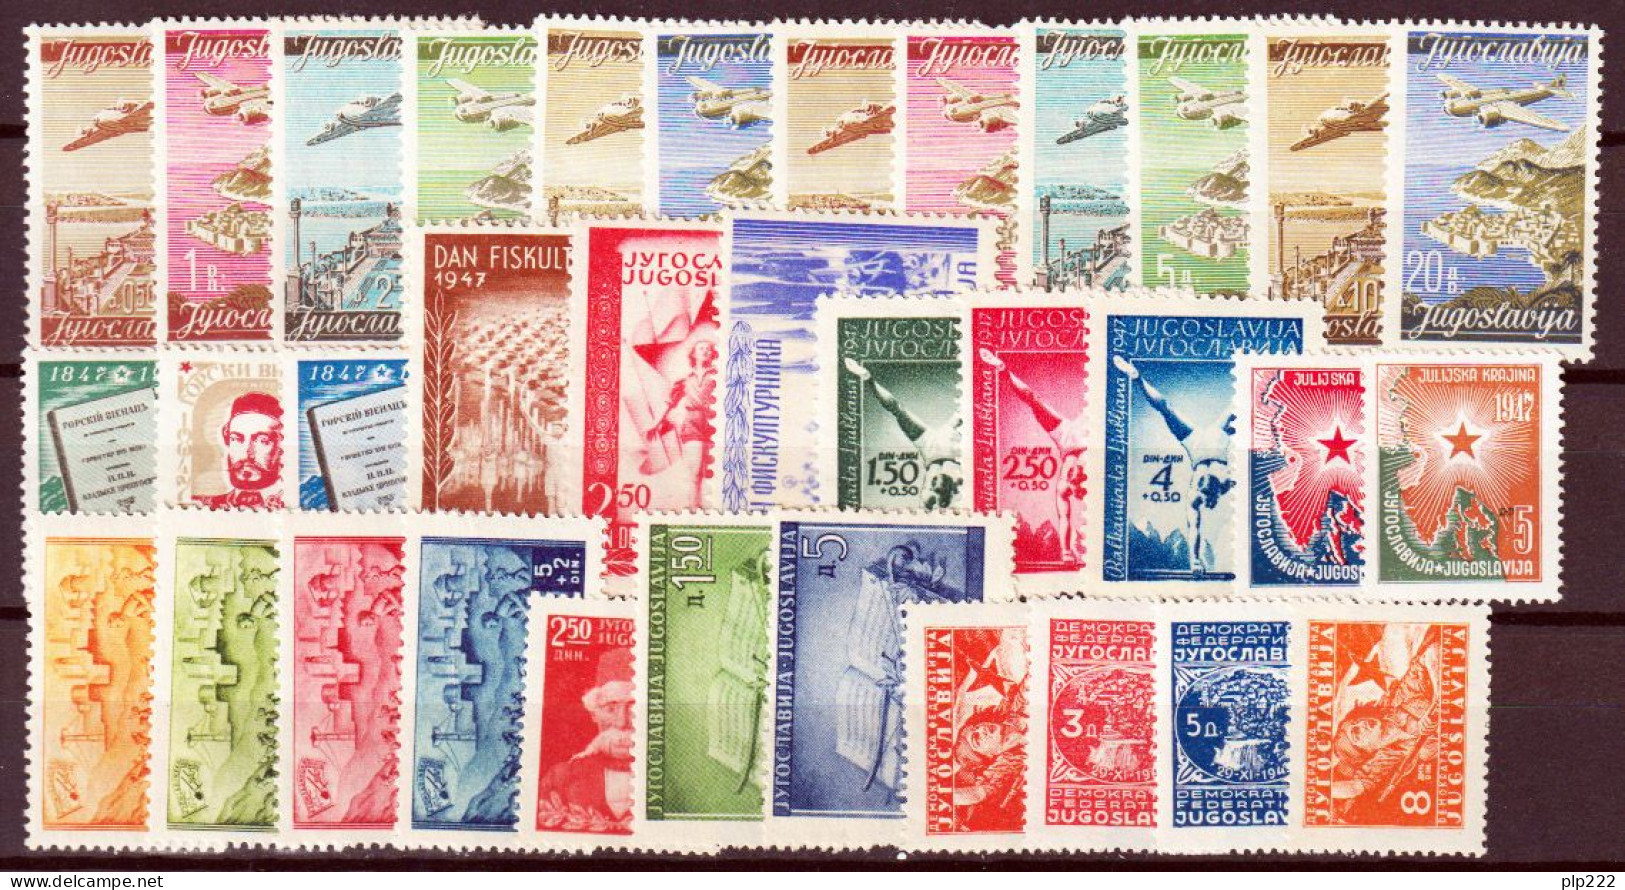 Jugoslavia 1947 Annata Completa / Complete Year Set **/MNH VF/F - Annate Complete